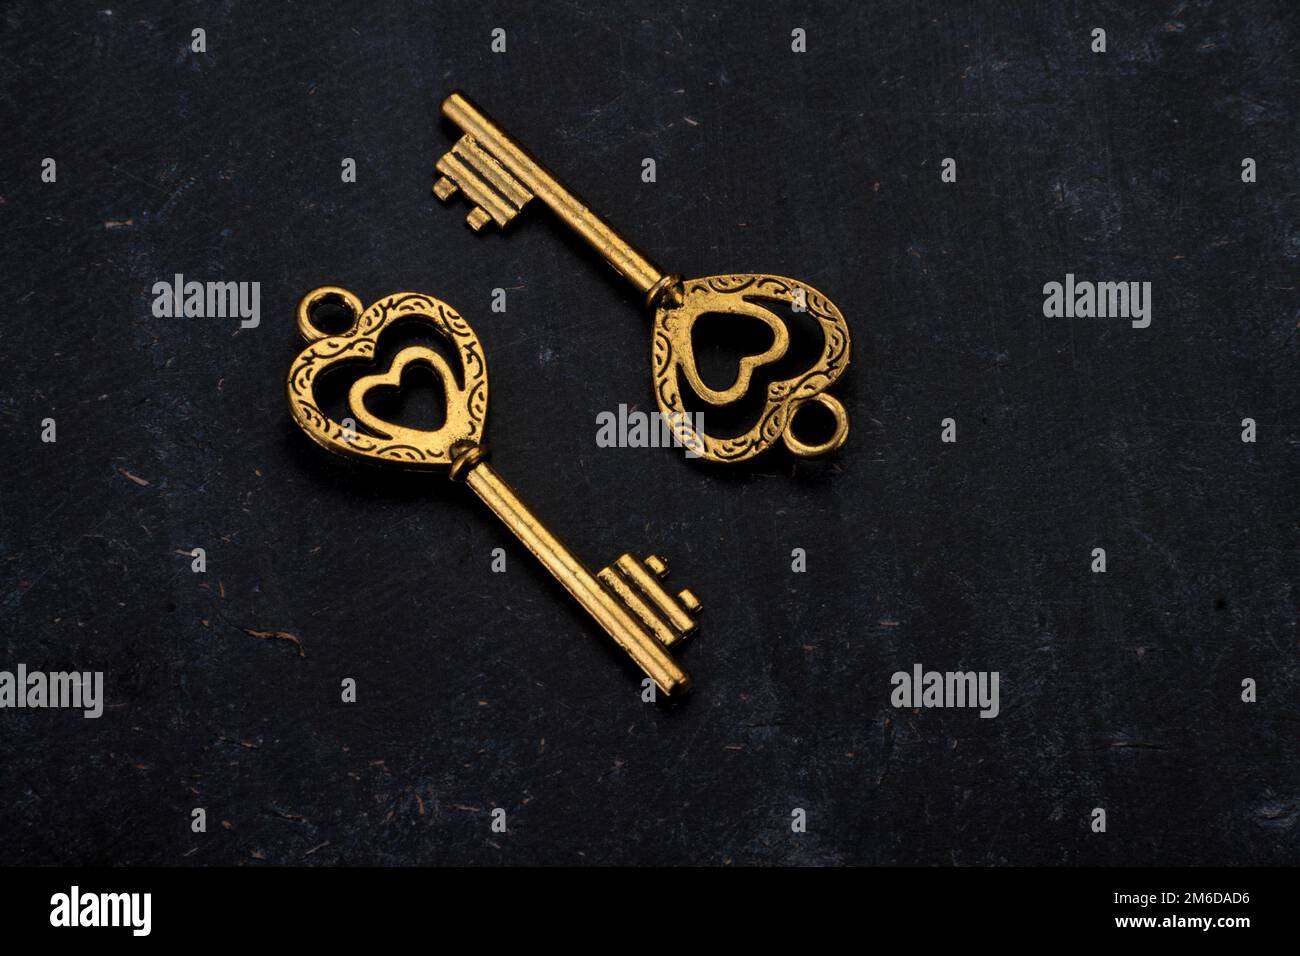 Déverrouillez mon coeur - deux clés Vintage en forme de coeur Banque D'Images